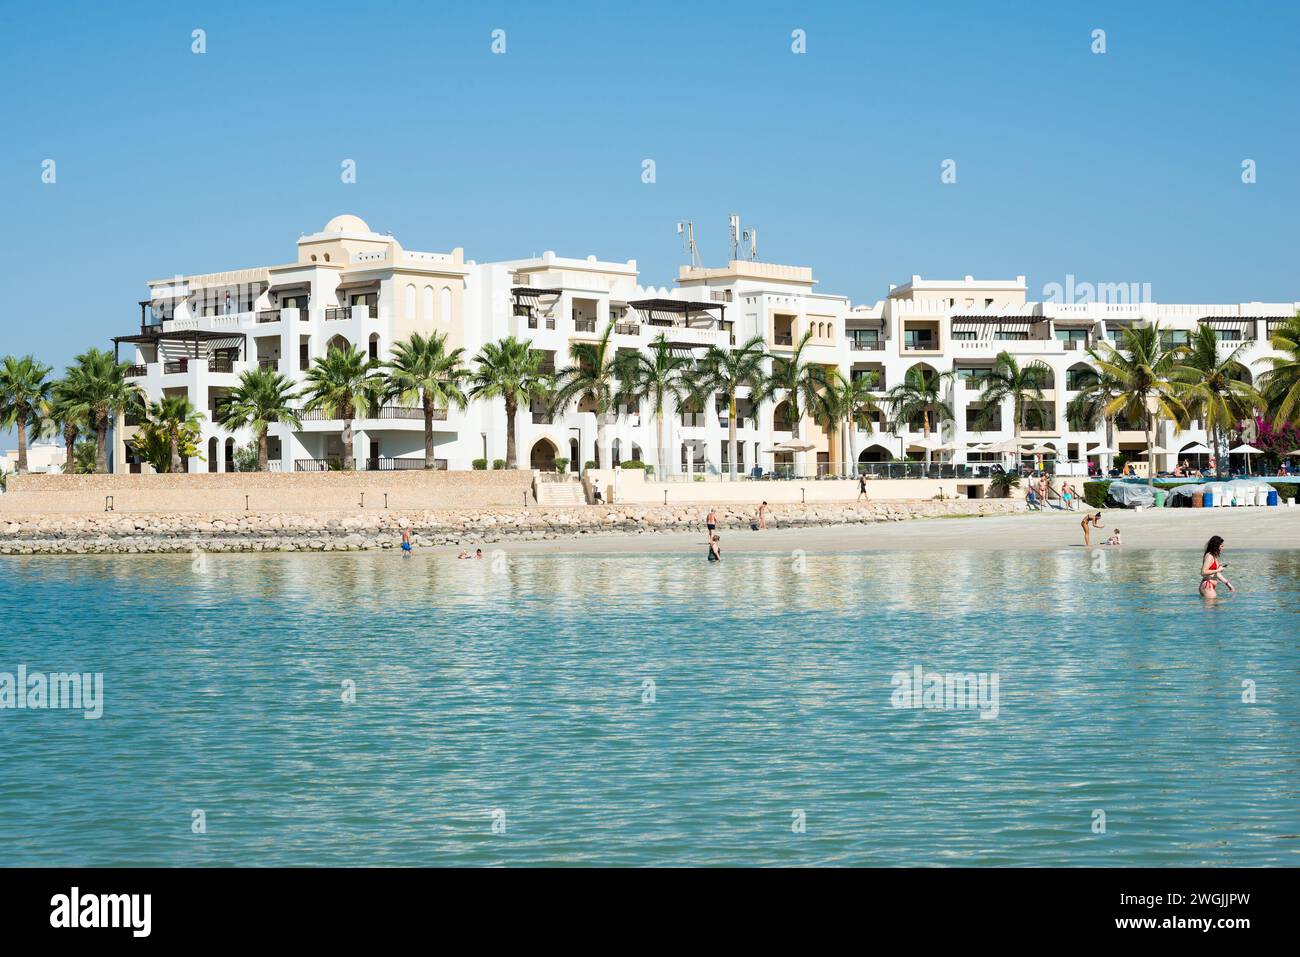 Hôtel Al Fanar, Salalah, Oman, Gouvernorat de Dhofar Banque D'Images